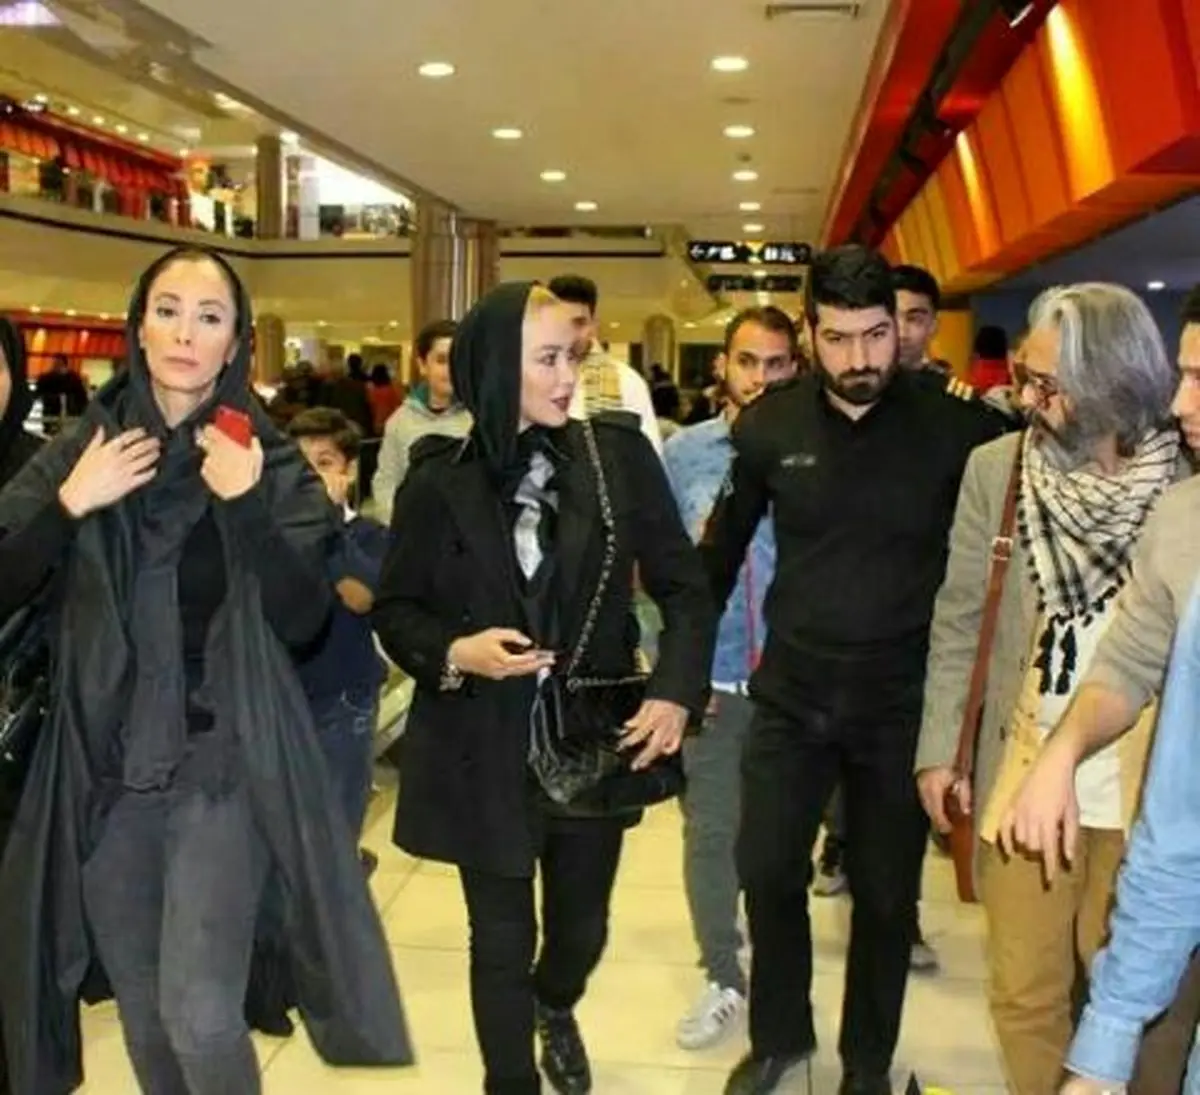 هجوم هواداران به "آنا نعمتی" و "سحر زکریا" در حال خرید در یک پاساژ + عکس